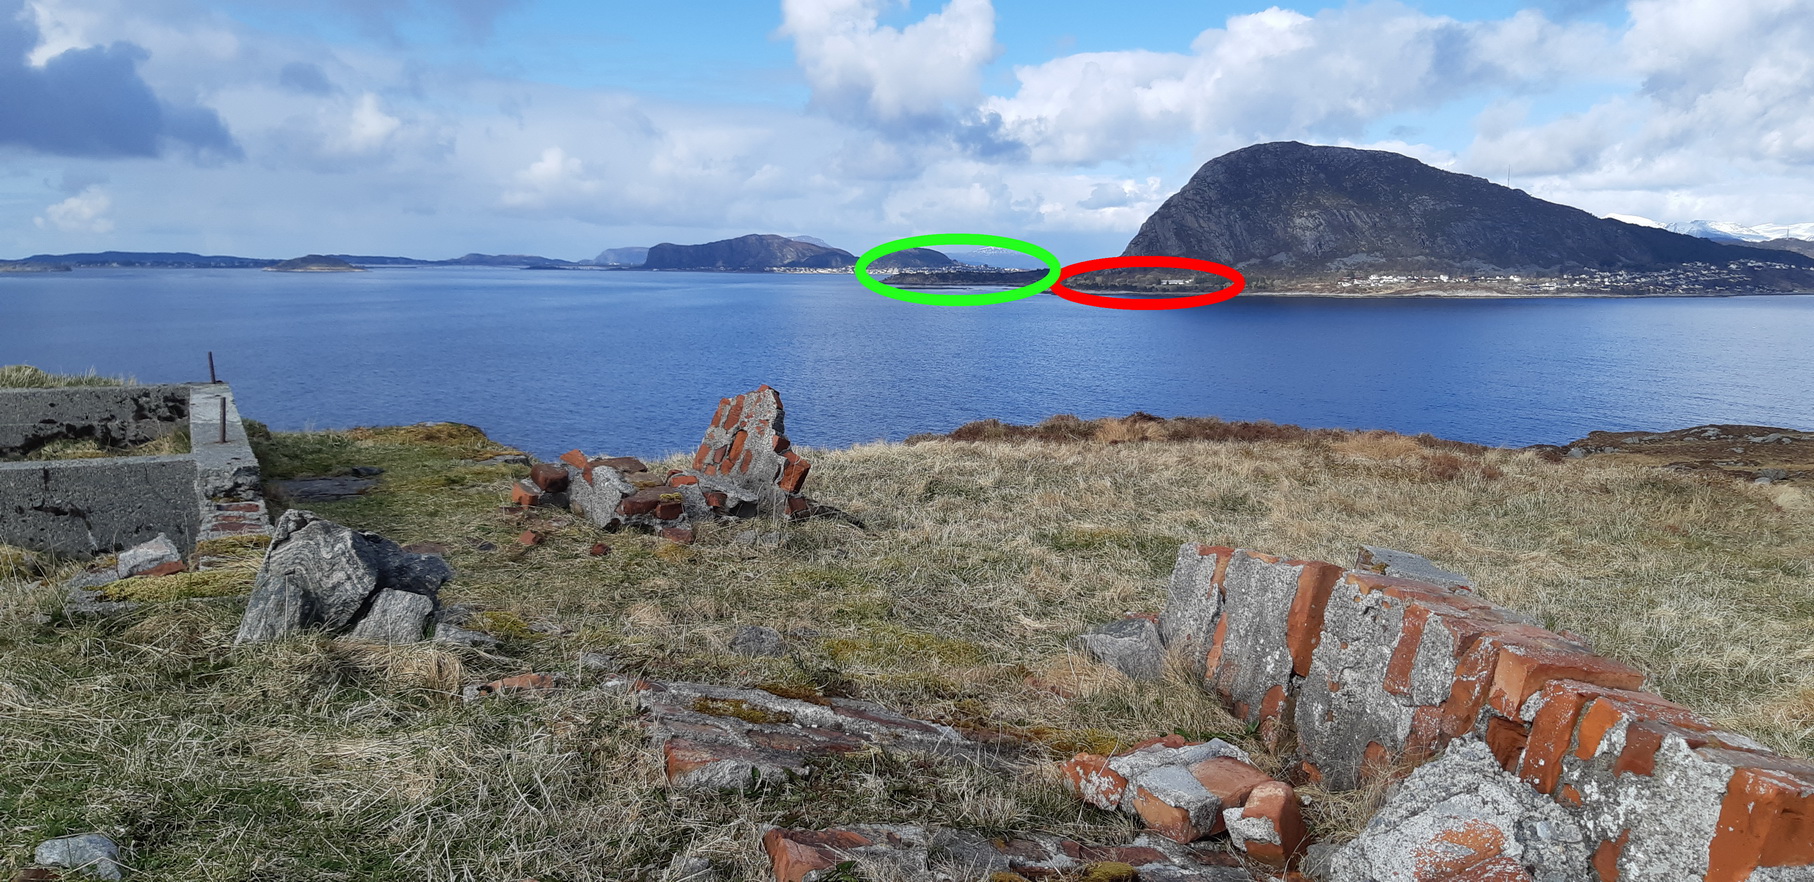 Fra annen vinkel. Her ser vi mot Hessøya utenfor Ålesund, og mot HKB 33./976 Hessen (innmerket med rødt), og MKB 2./505 Aalesund (innmerket med grønt).